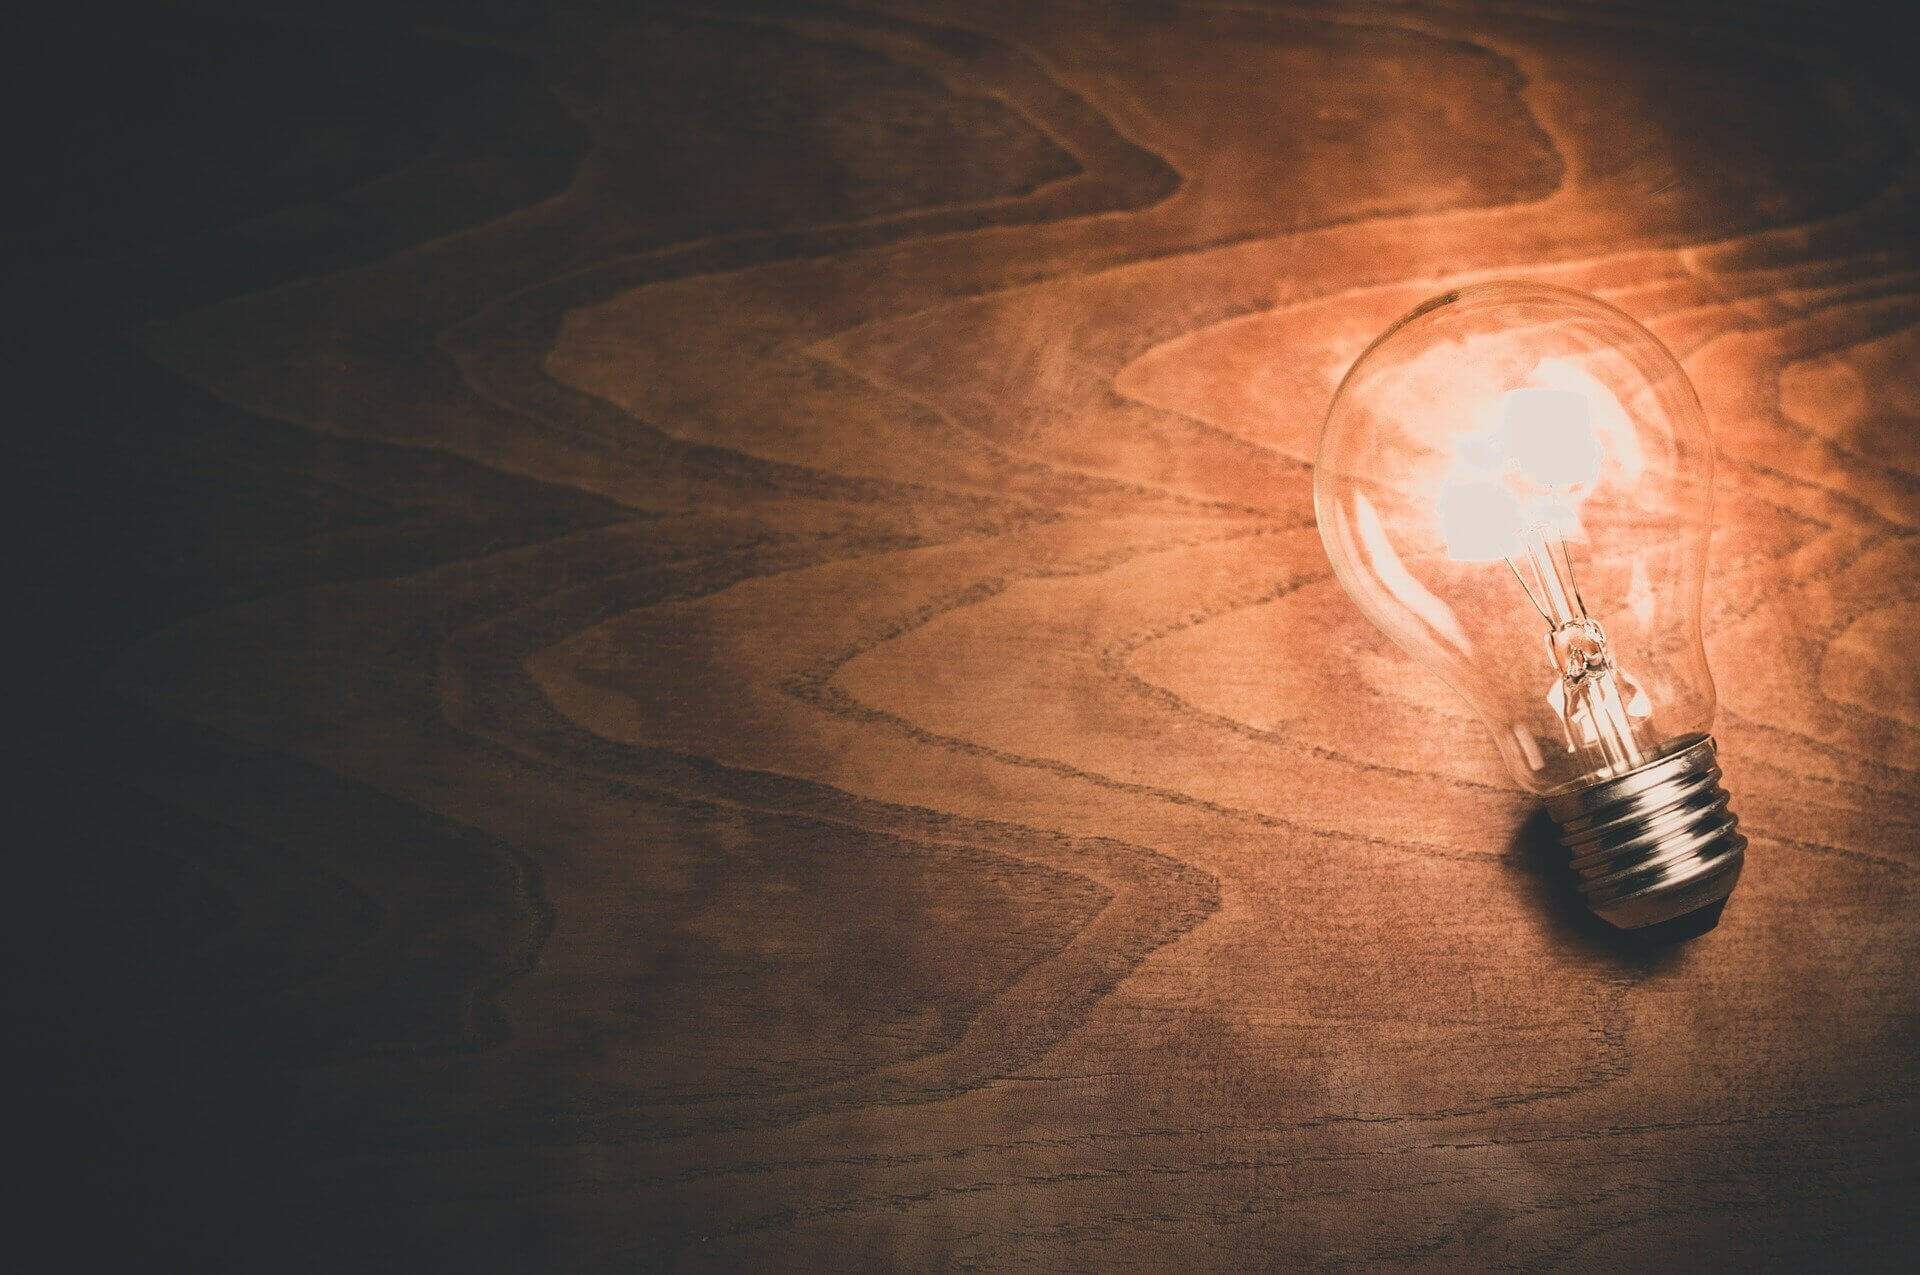 À direita, uma lâmpada acesa em uma mesa de madeira, representando o conceito de ideia | Propriedade industrial – Artigo Quinto